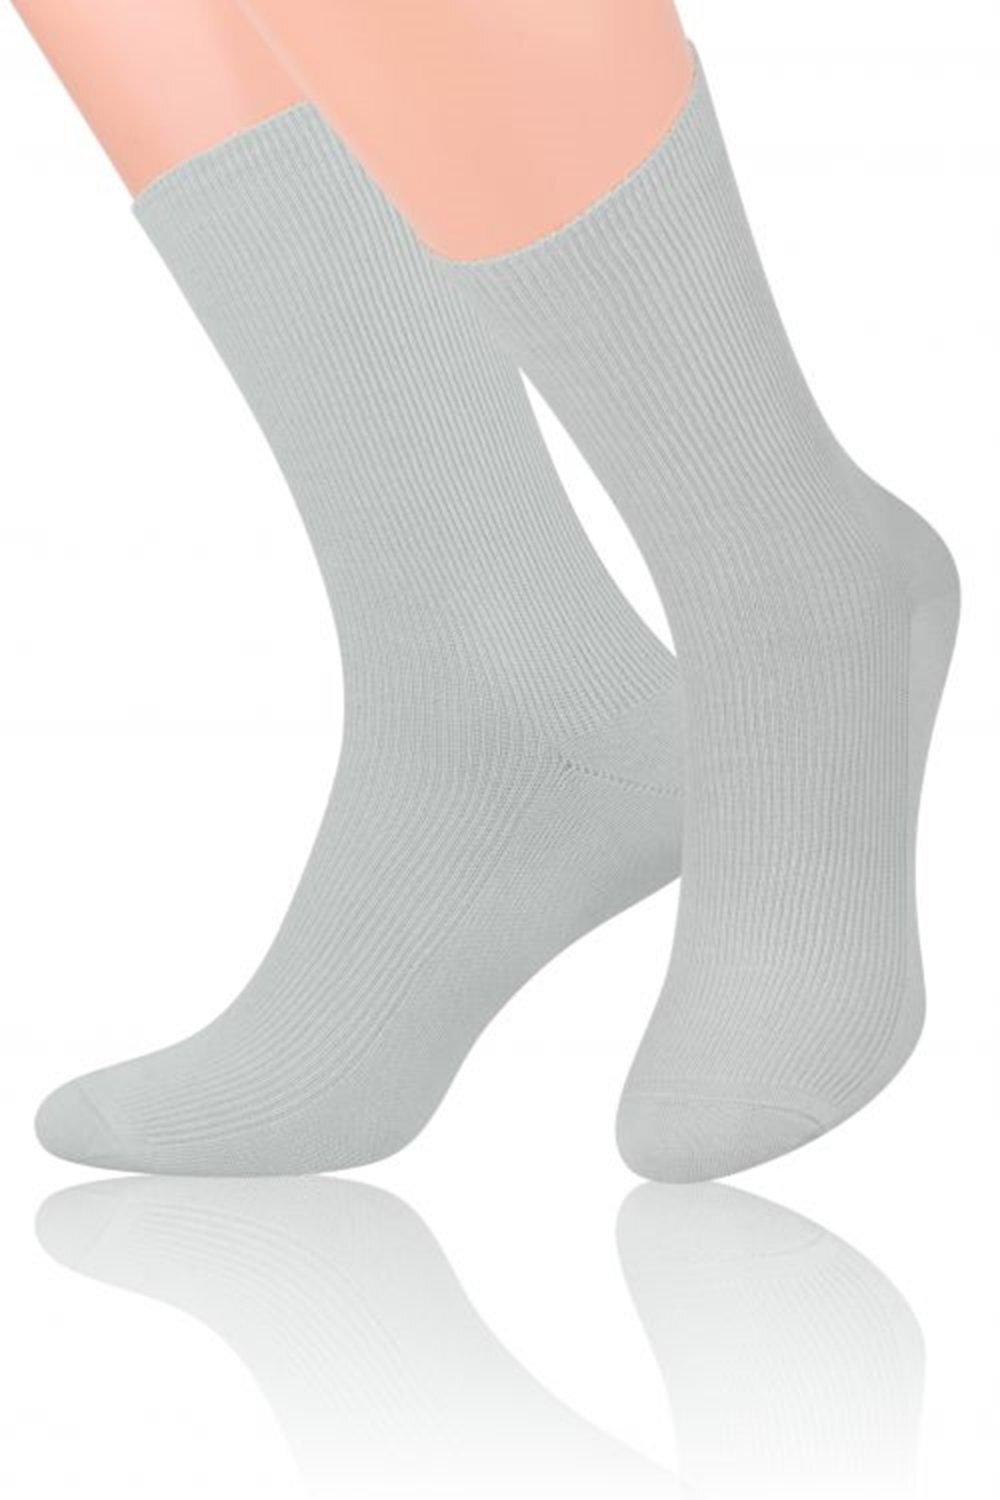 Steven Pánské ponožky 018 light grey